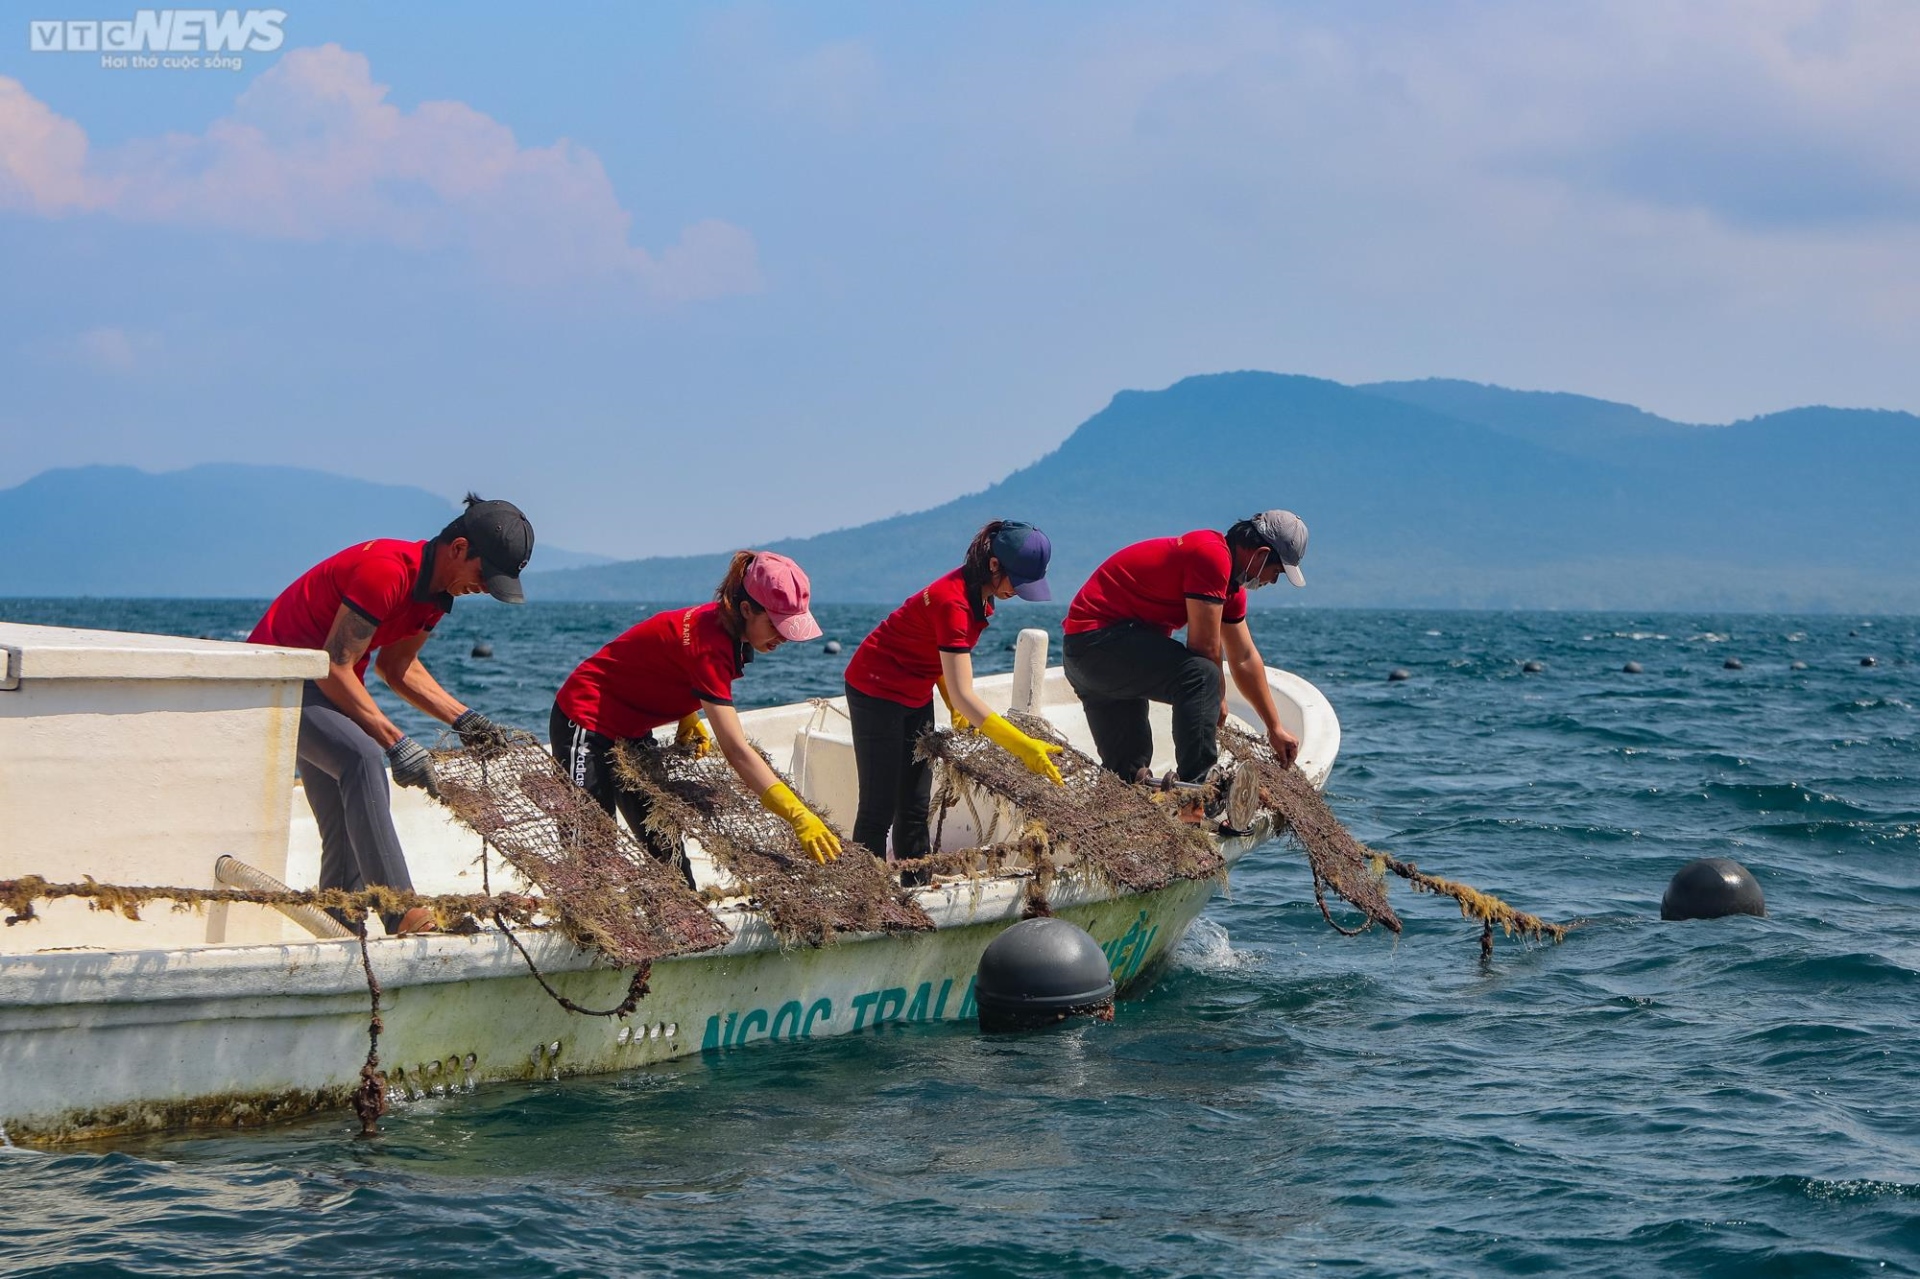 Nuôi trai lấy ngọc ở Phú Quốc – nghề tạo nên những viên ngọc quý giá